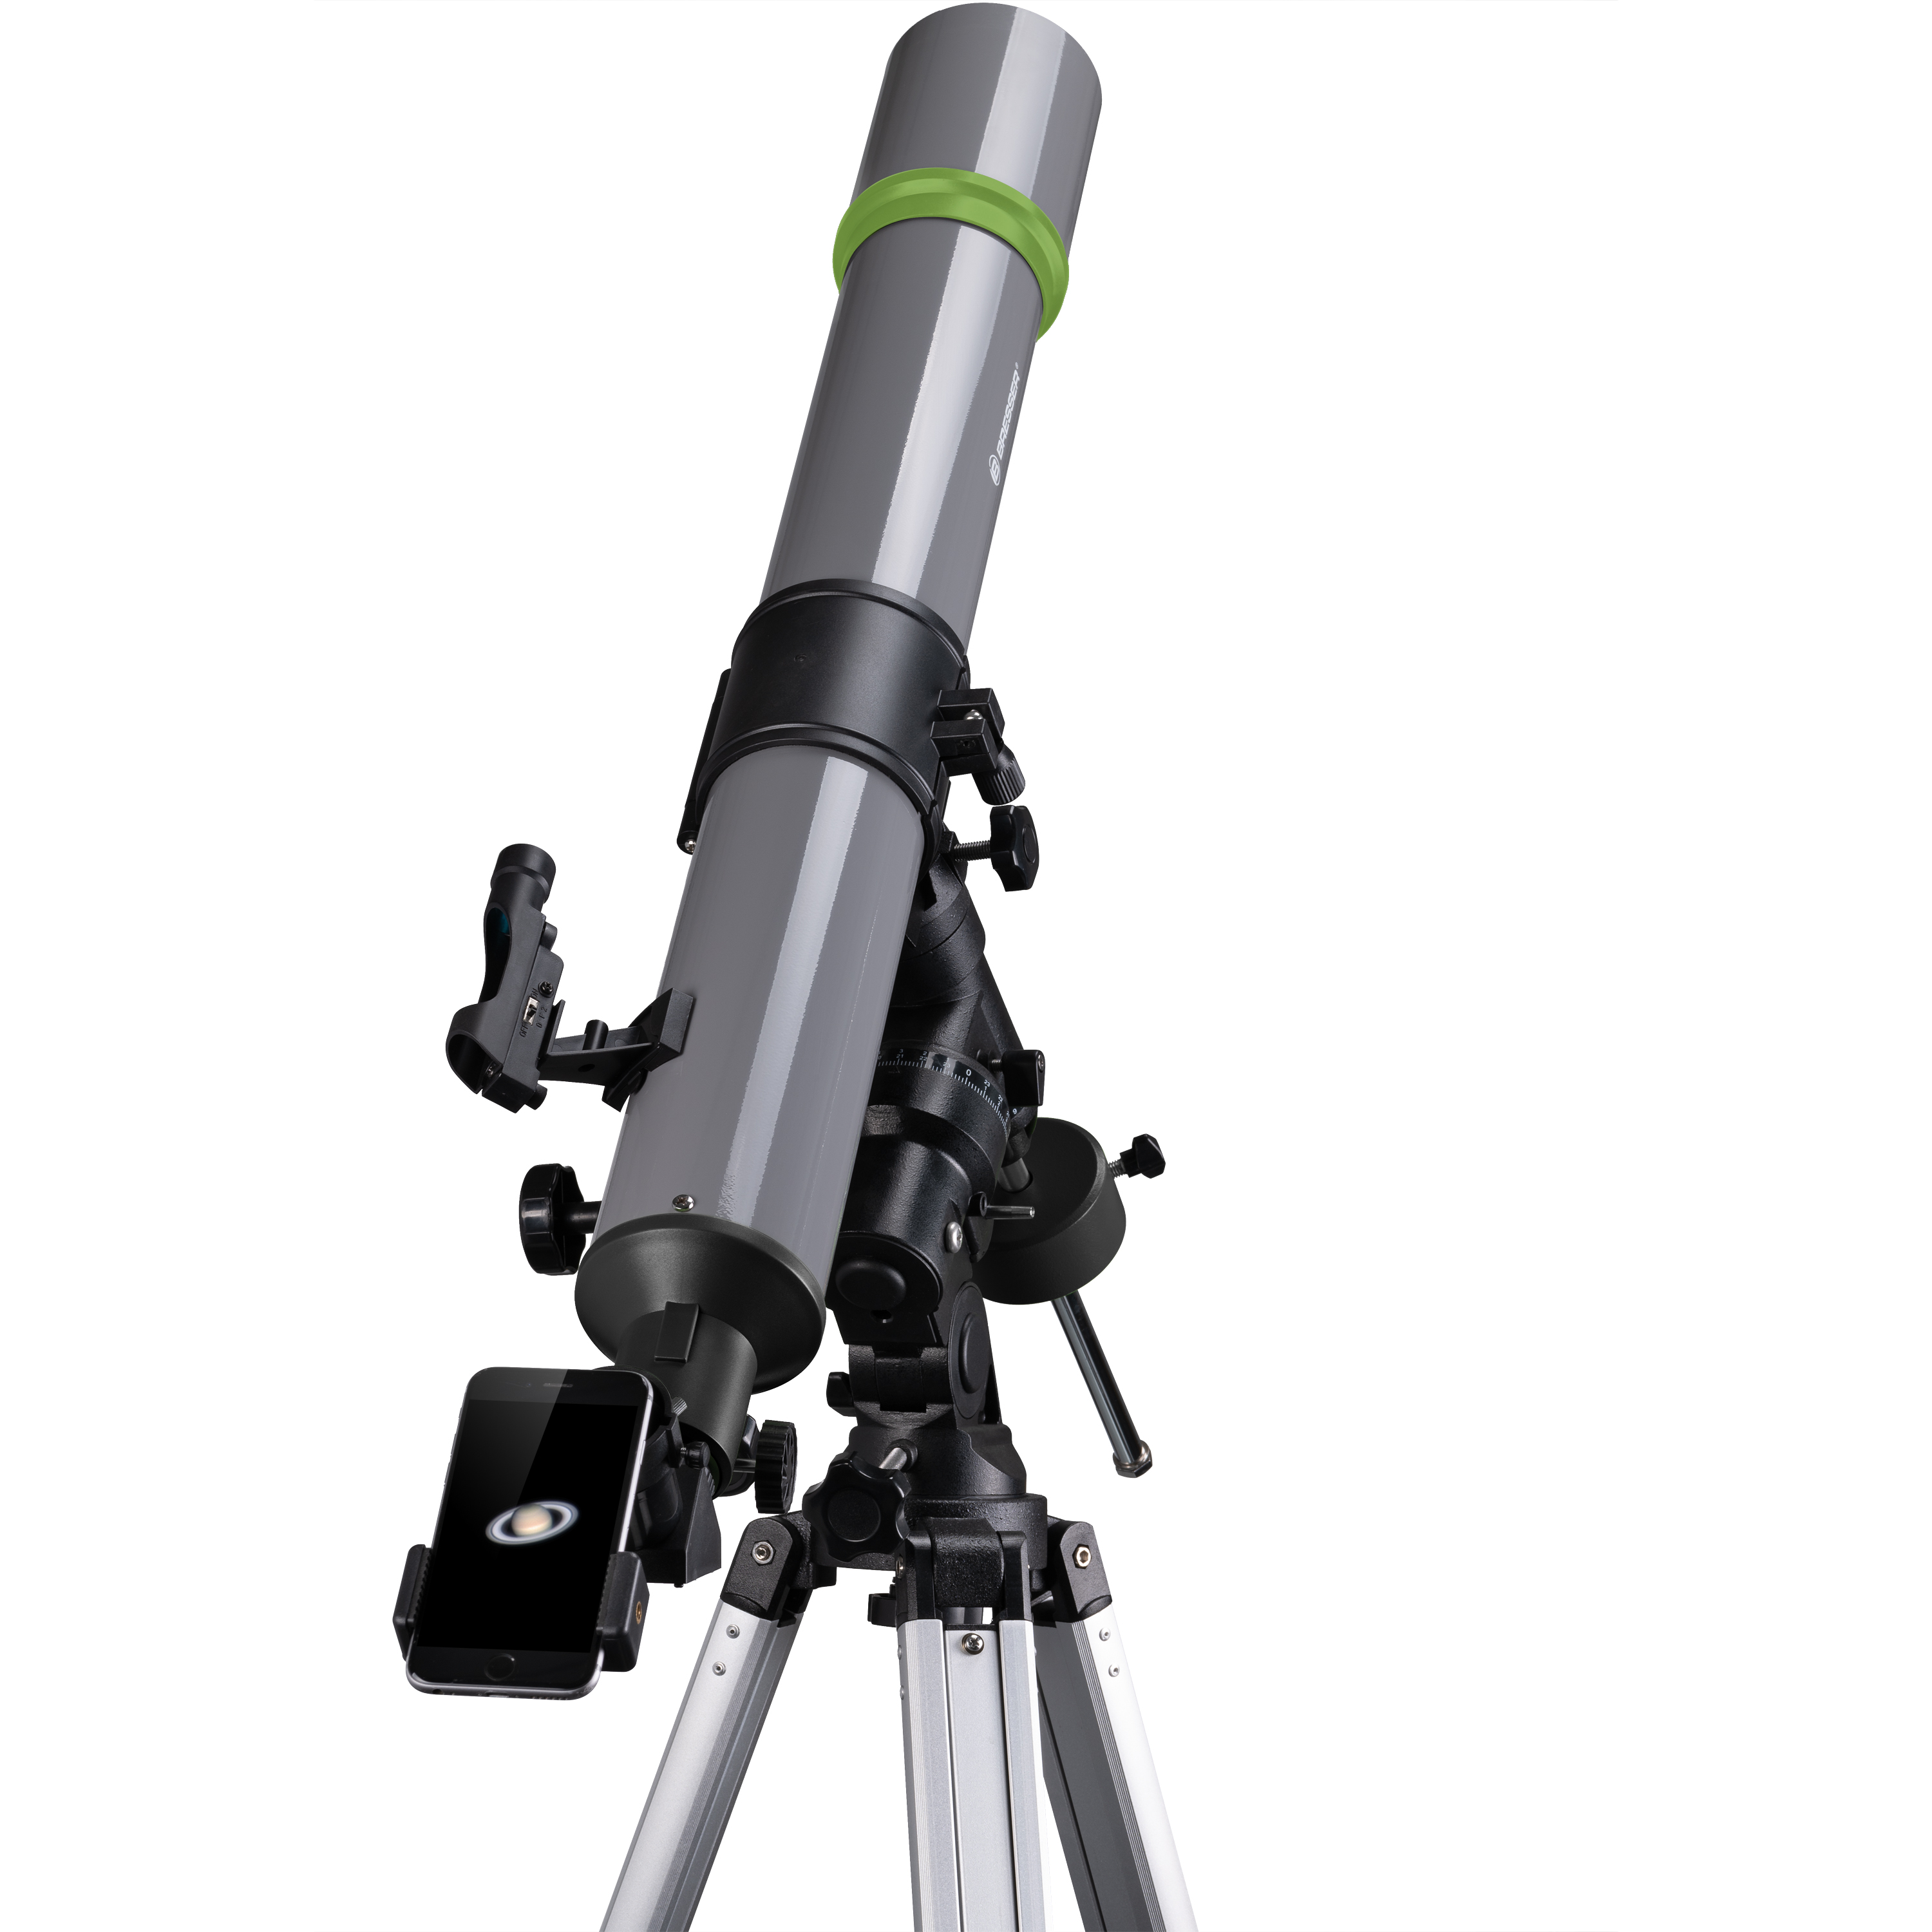  Telescopio rifrattore 90/900 su montatura Eq3 completo di adattatore per smartphone e accessori 